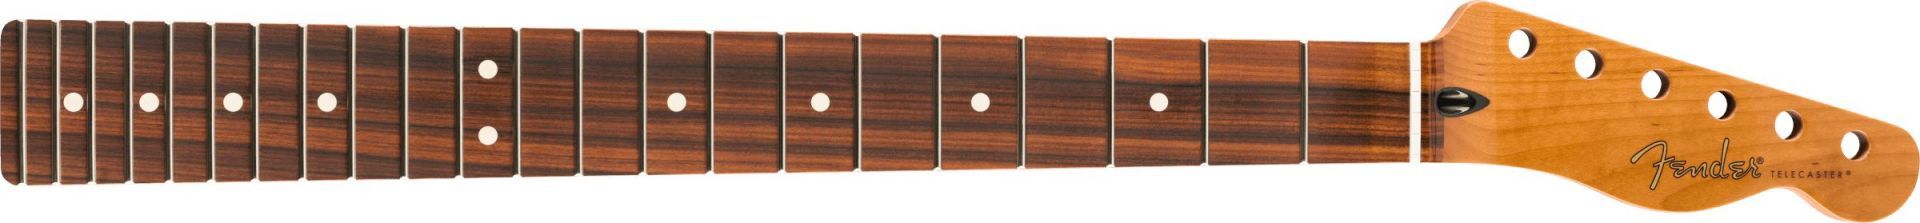 Fender Roasted Maple Telecaster-Neck 22 Jumbo Frets